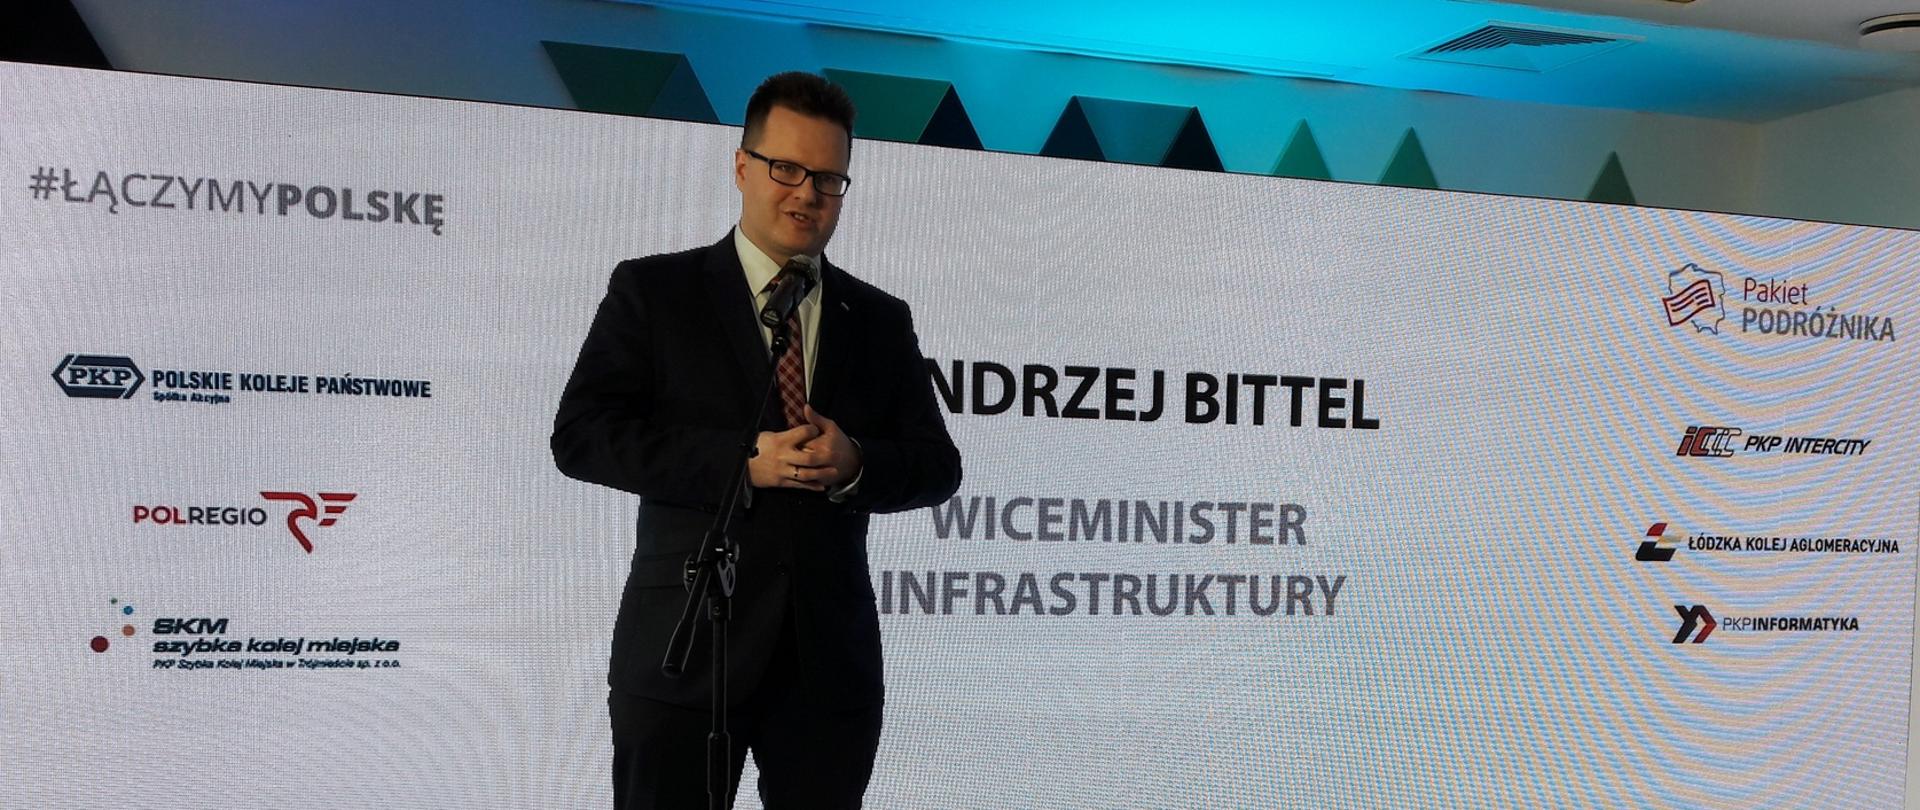 Wiceminister Andrzej Bittel podczas konferencji prasowej